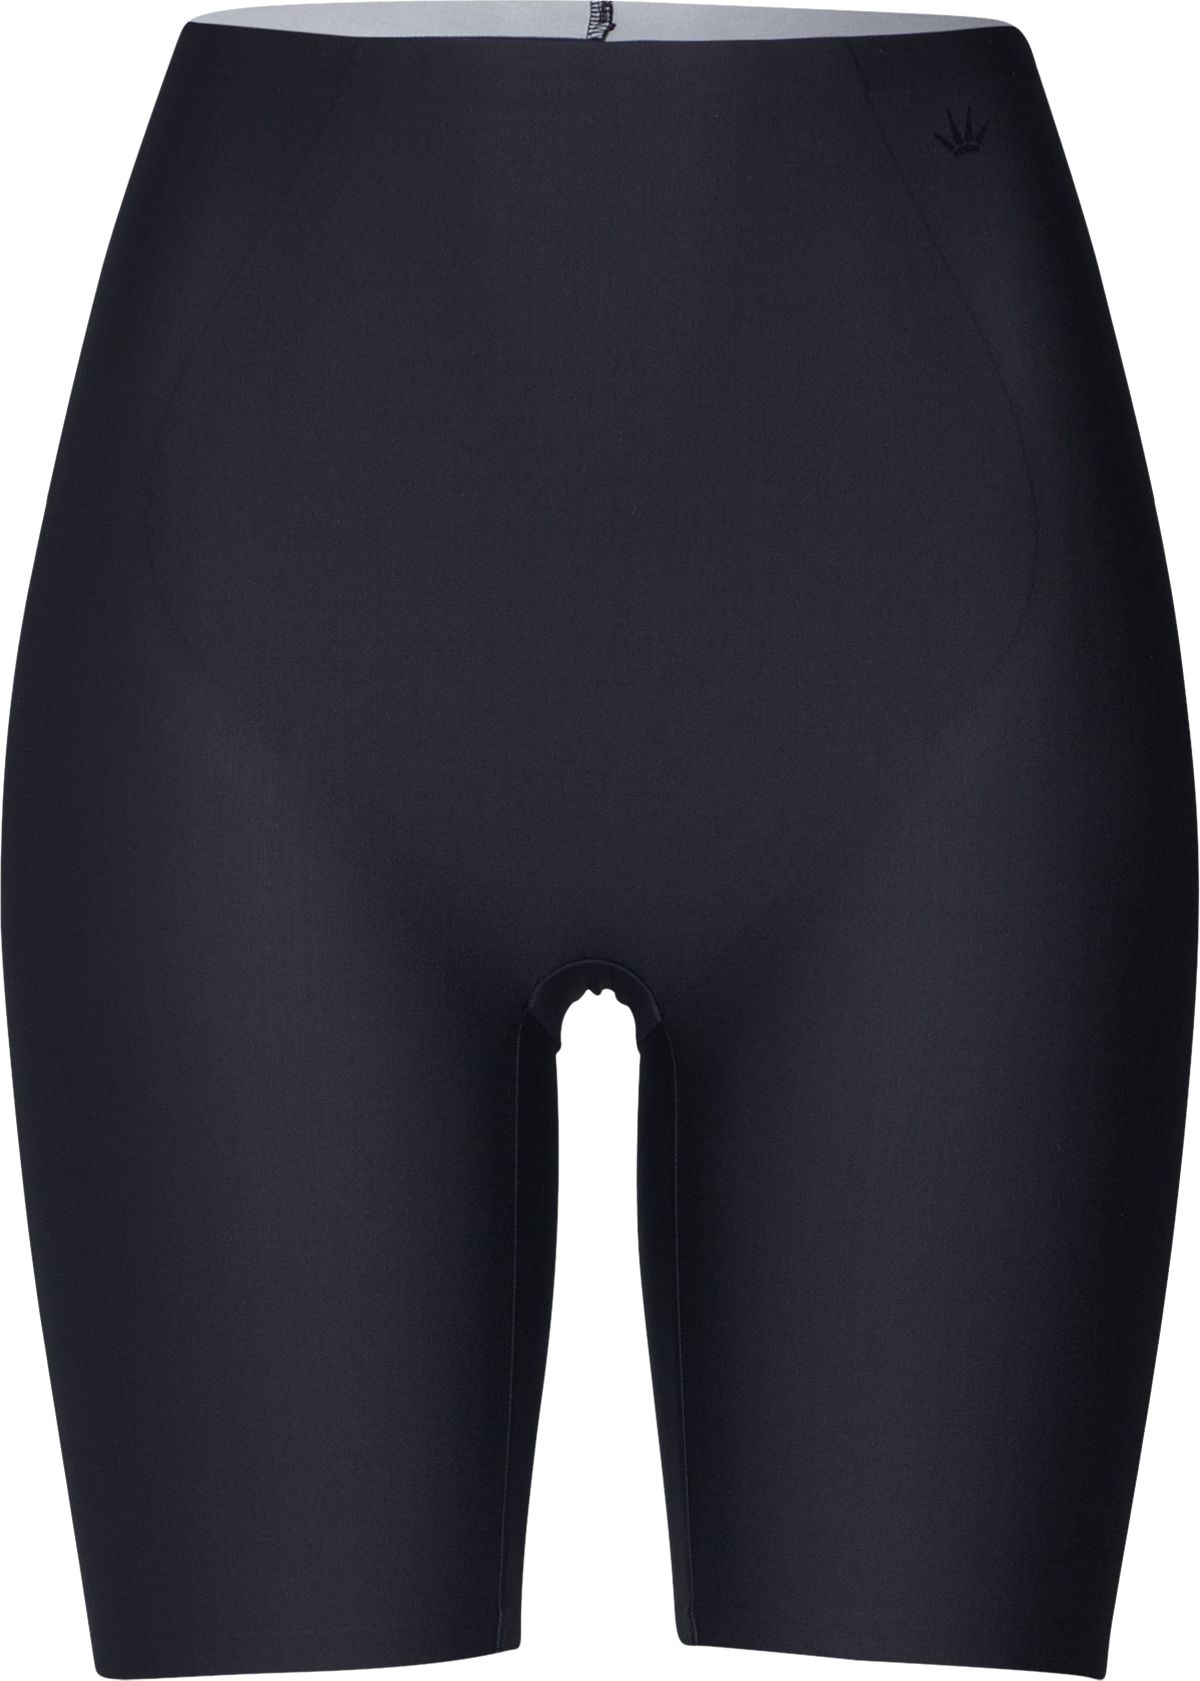 TRIUMPH Stahovací kalhotky 'Medium Shaping Series Panty L' černá